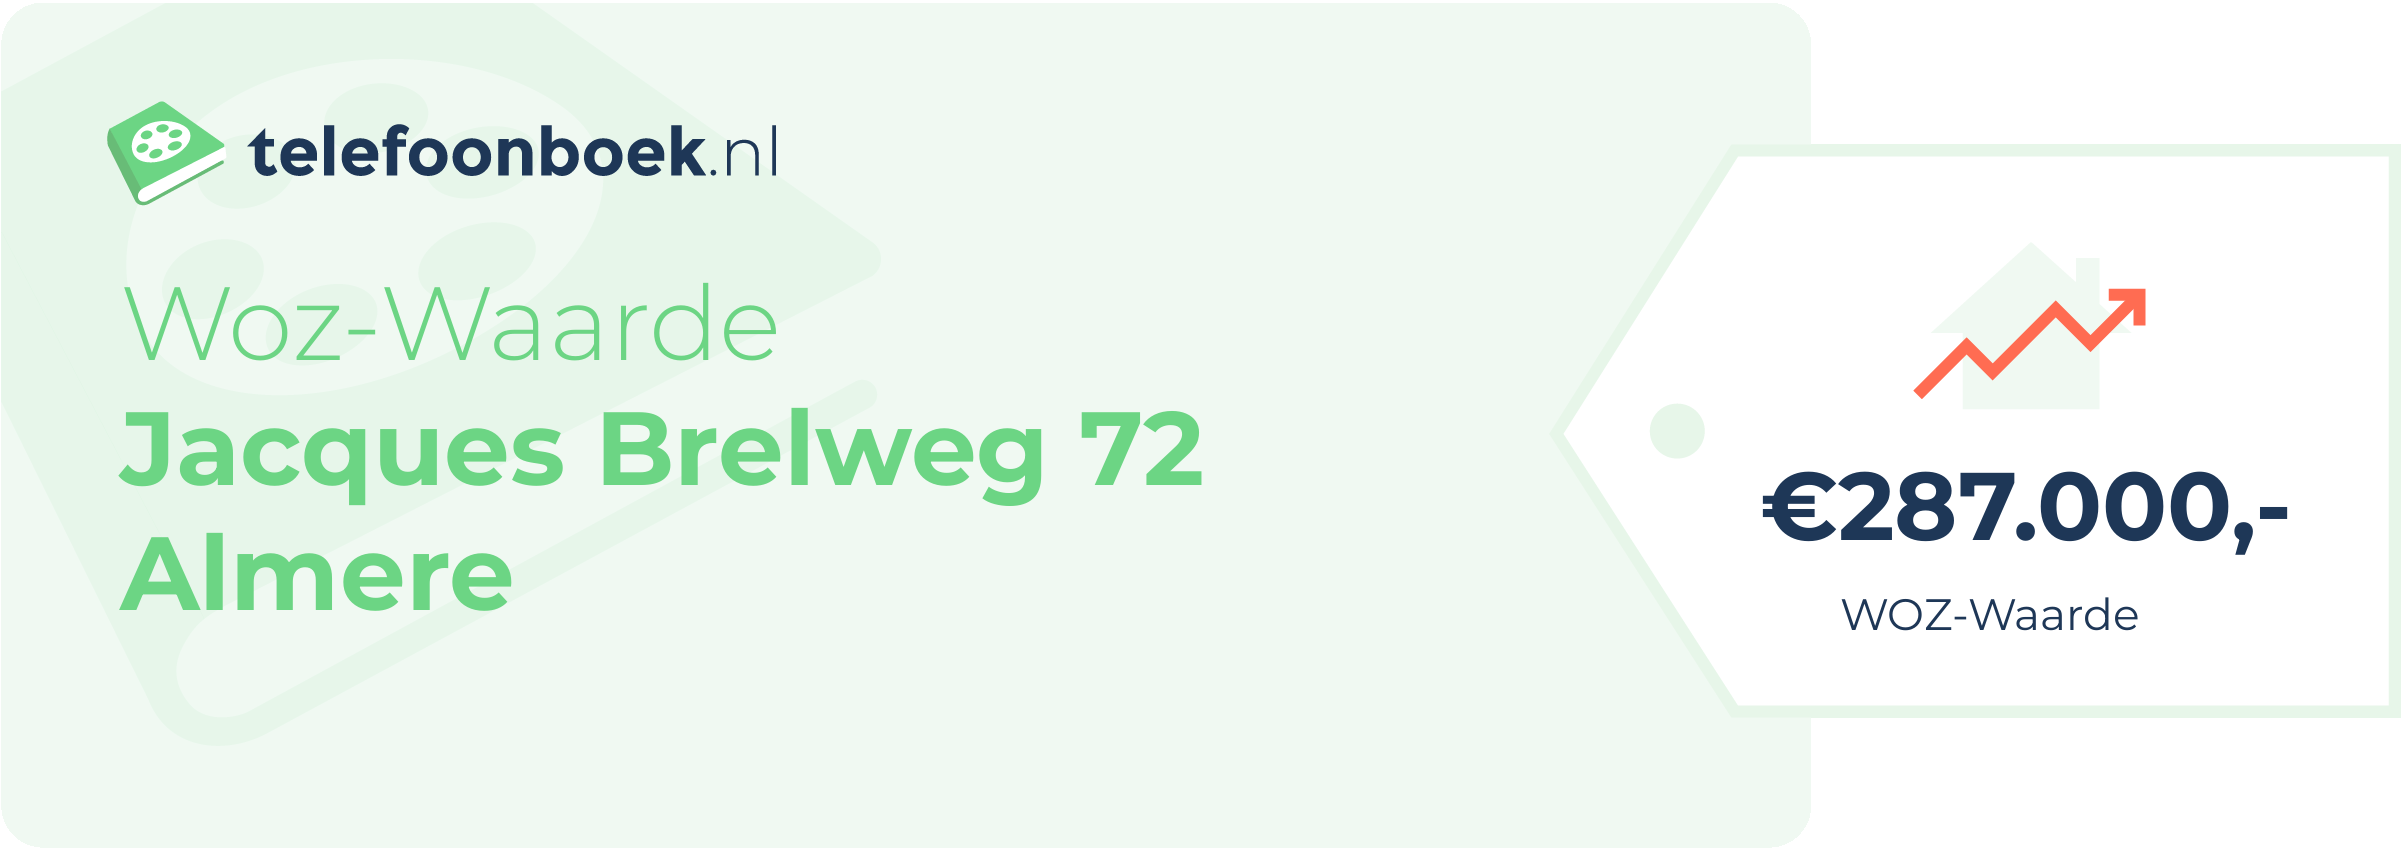 WOZ-waarde Jacques Brelweg 72 Almere